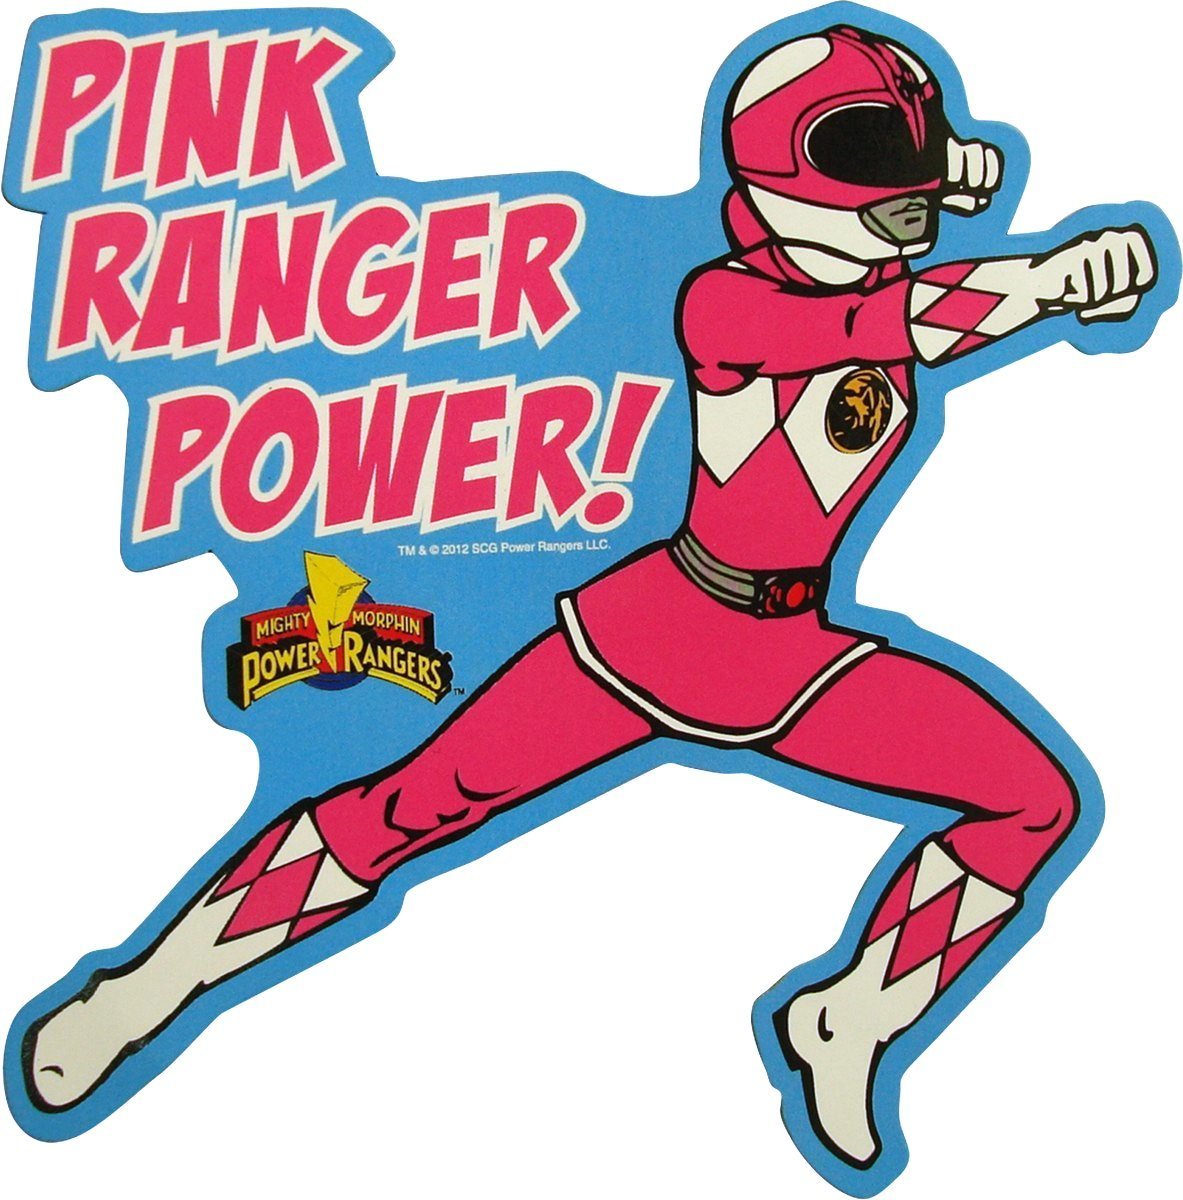 Pink power ranger clipart 3 » Clipart Portal.